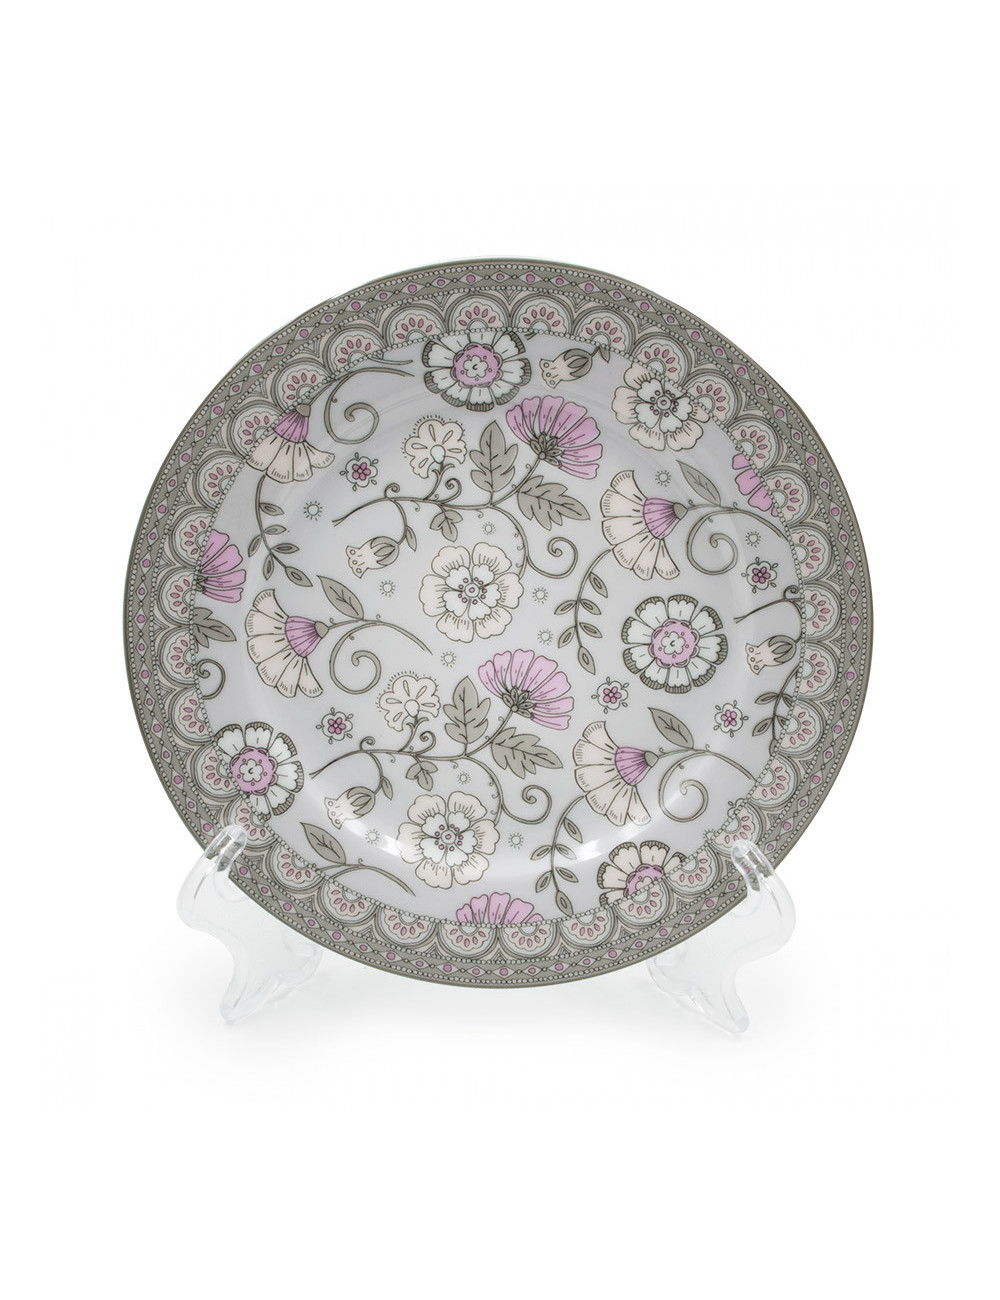 Piattino in porcellana Ø 19,5 cm, con fiori grigi per servizio da tè Flowers - La Pianta del Tè Shop online